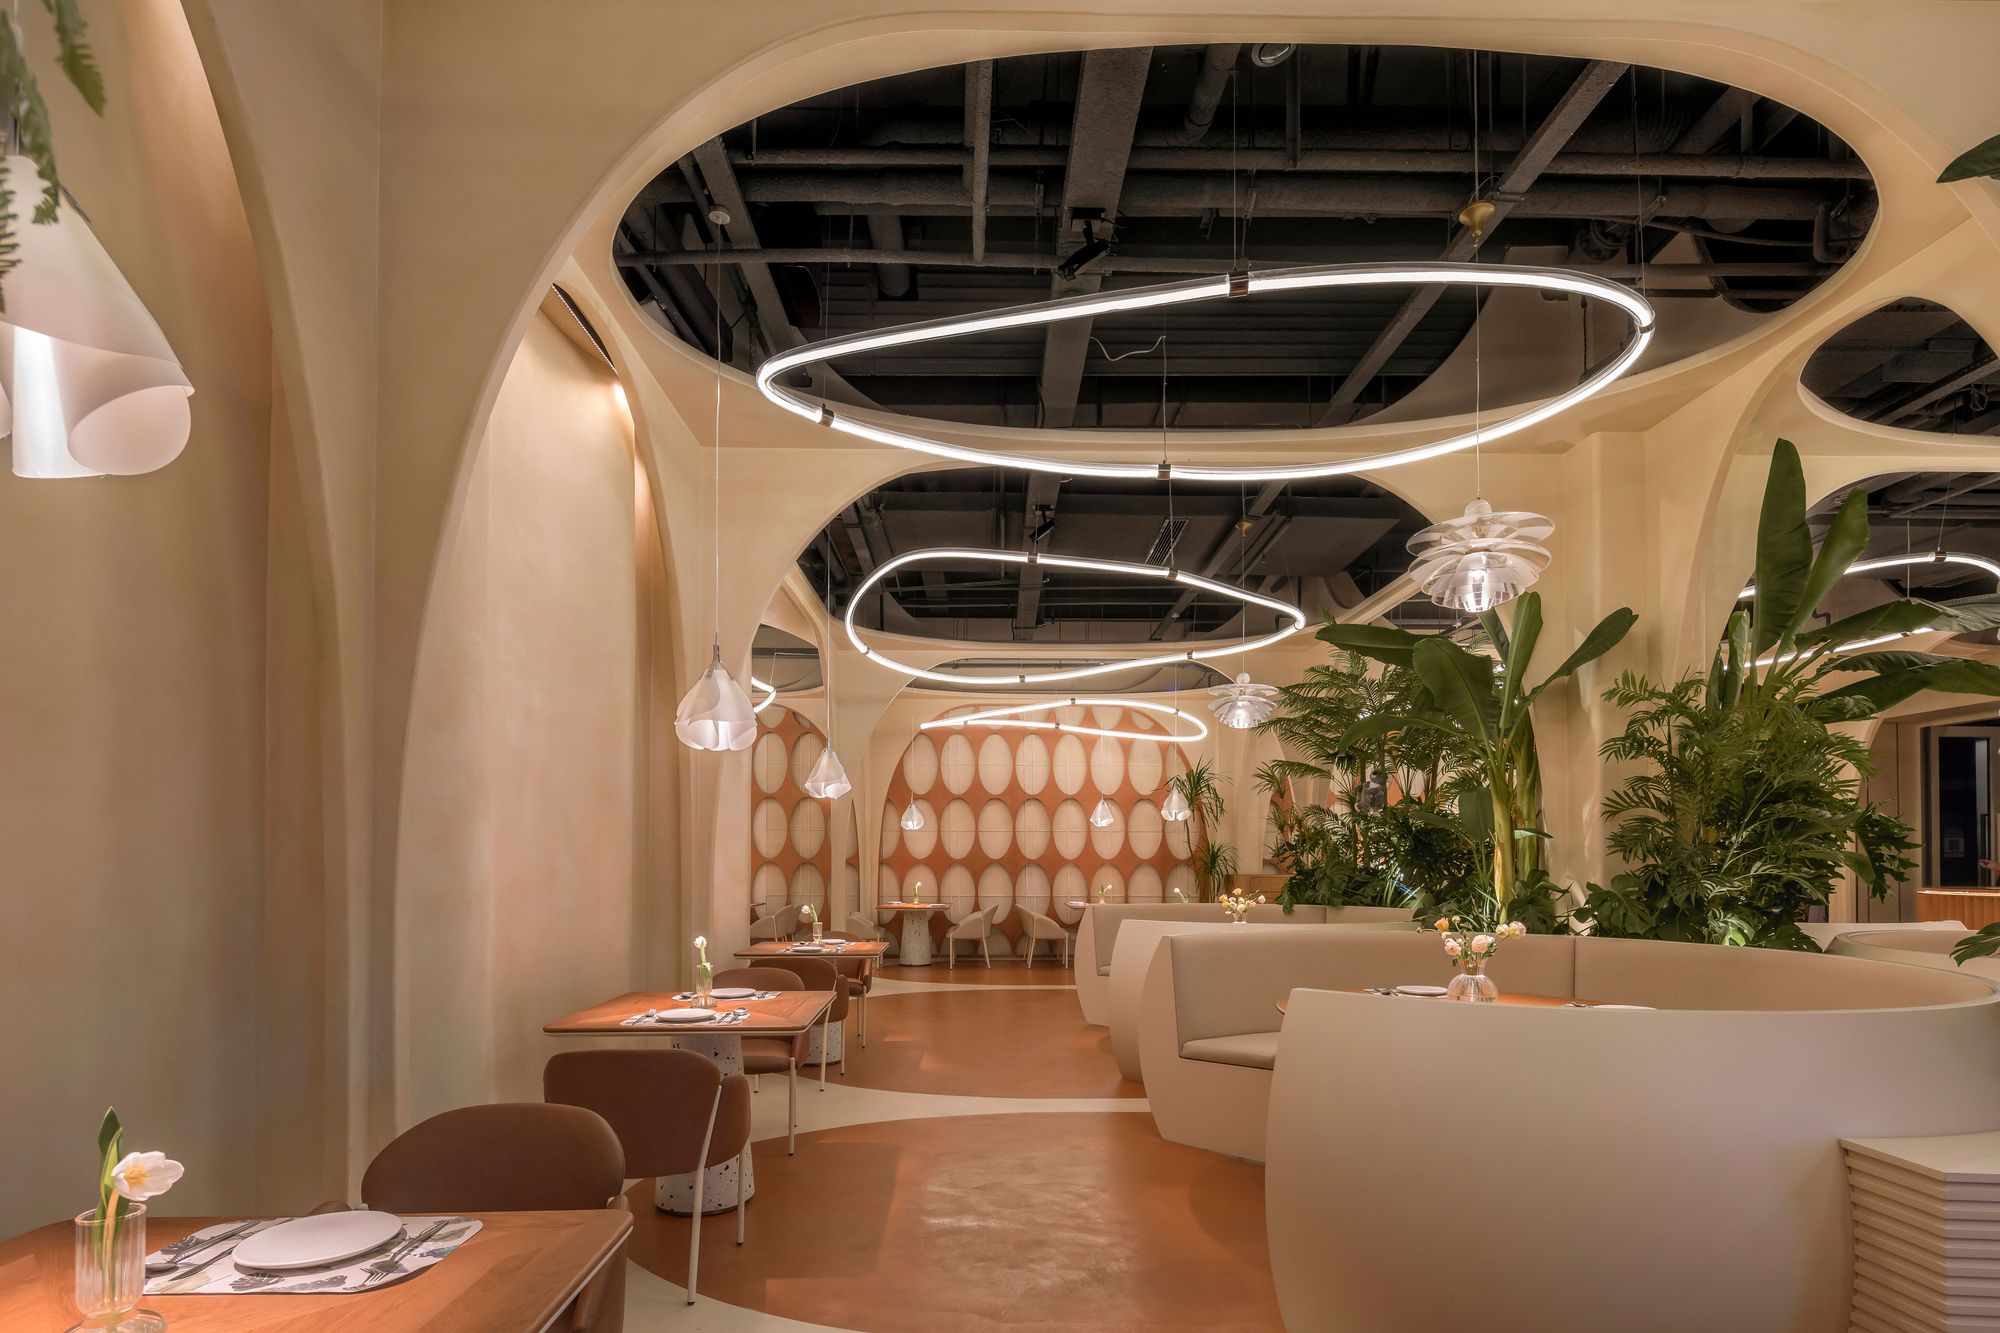 图片[4]|遇见11华阳餐厅|ART-Arrakis | 建筑室内设计的创新与灵感